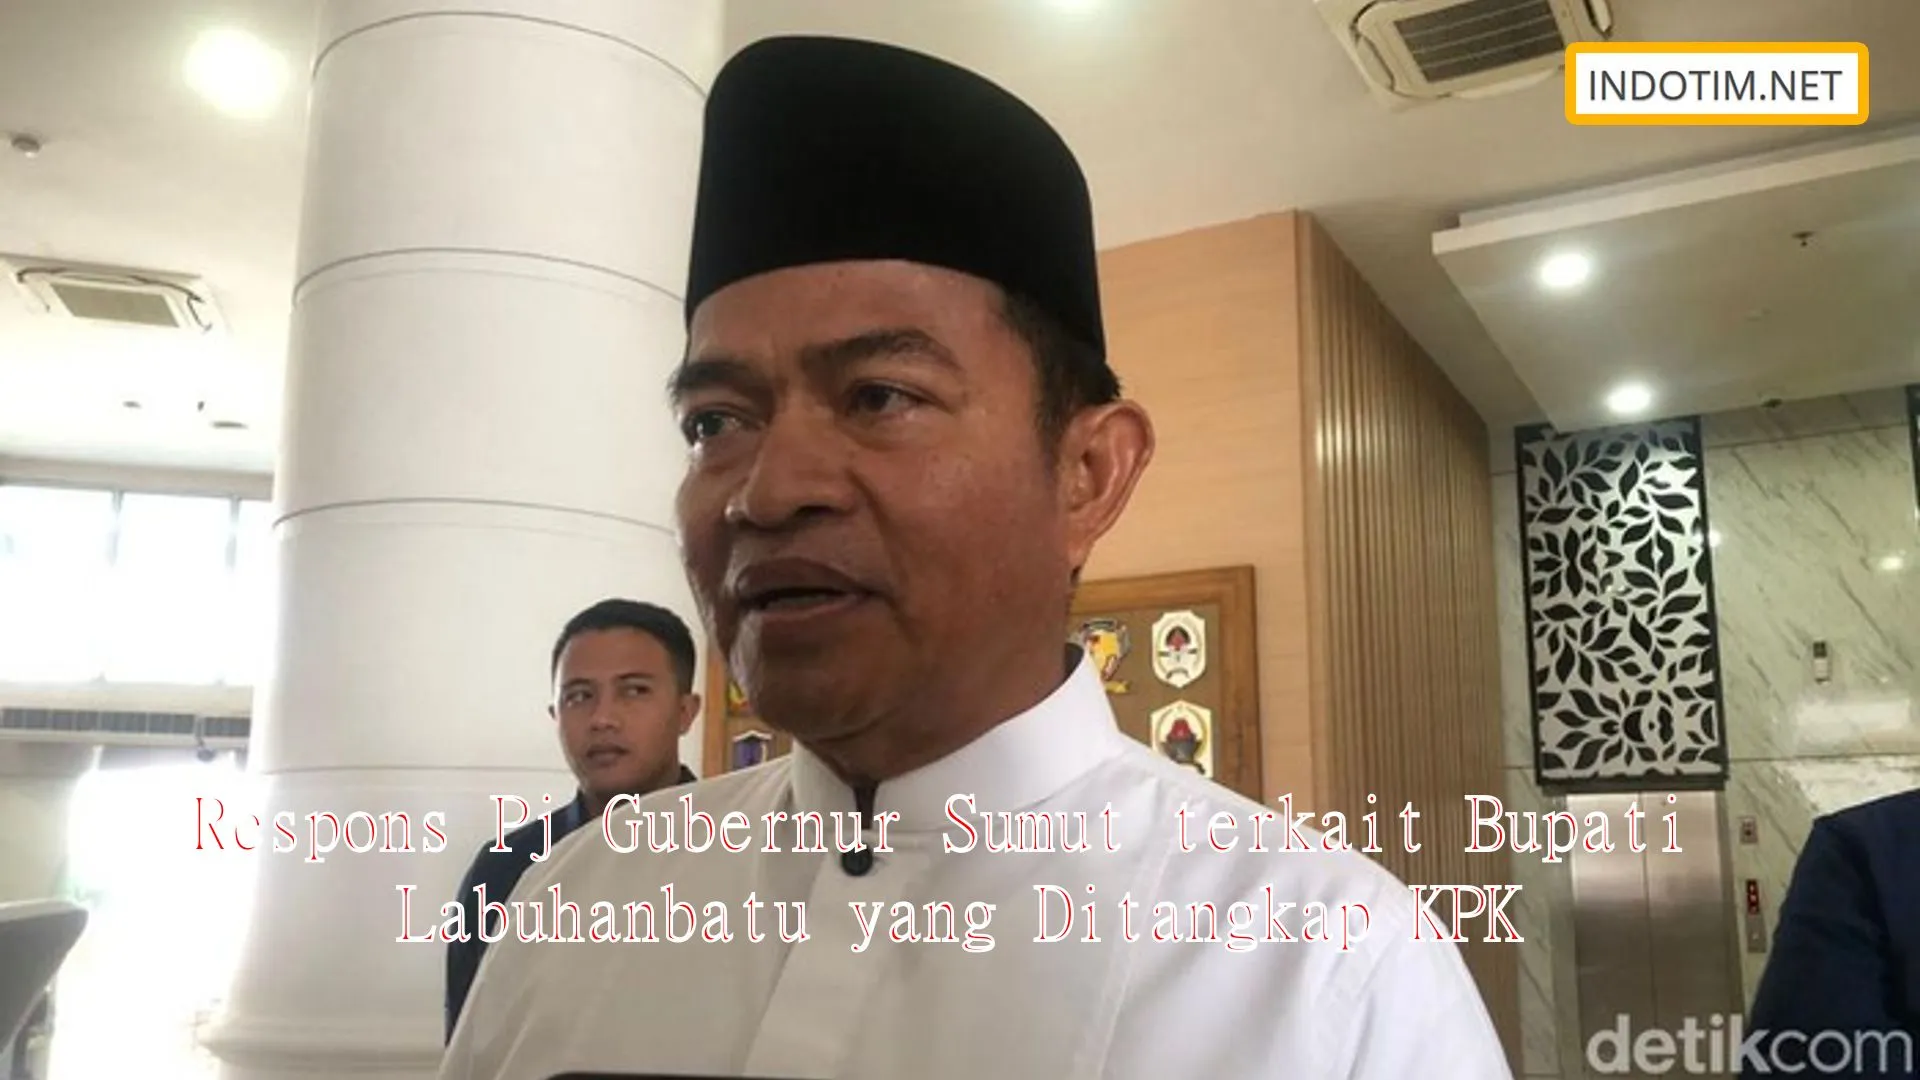 Respons Pj Gubernur Sumut terkait Bupati Labuhanbatu yang Ditangkap KPK